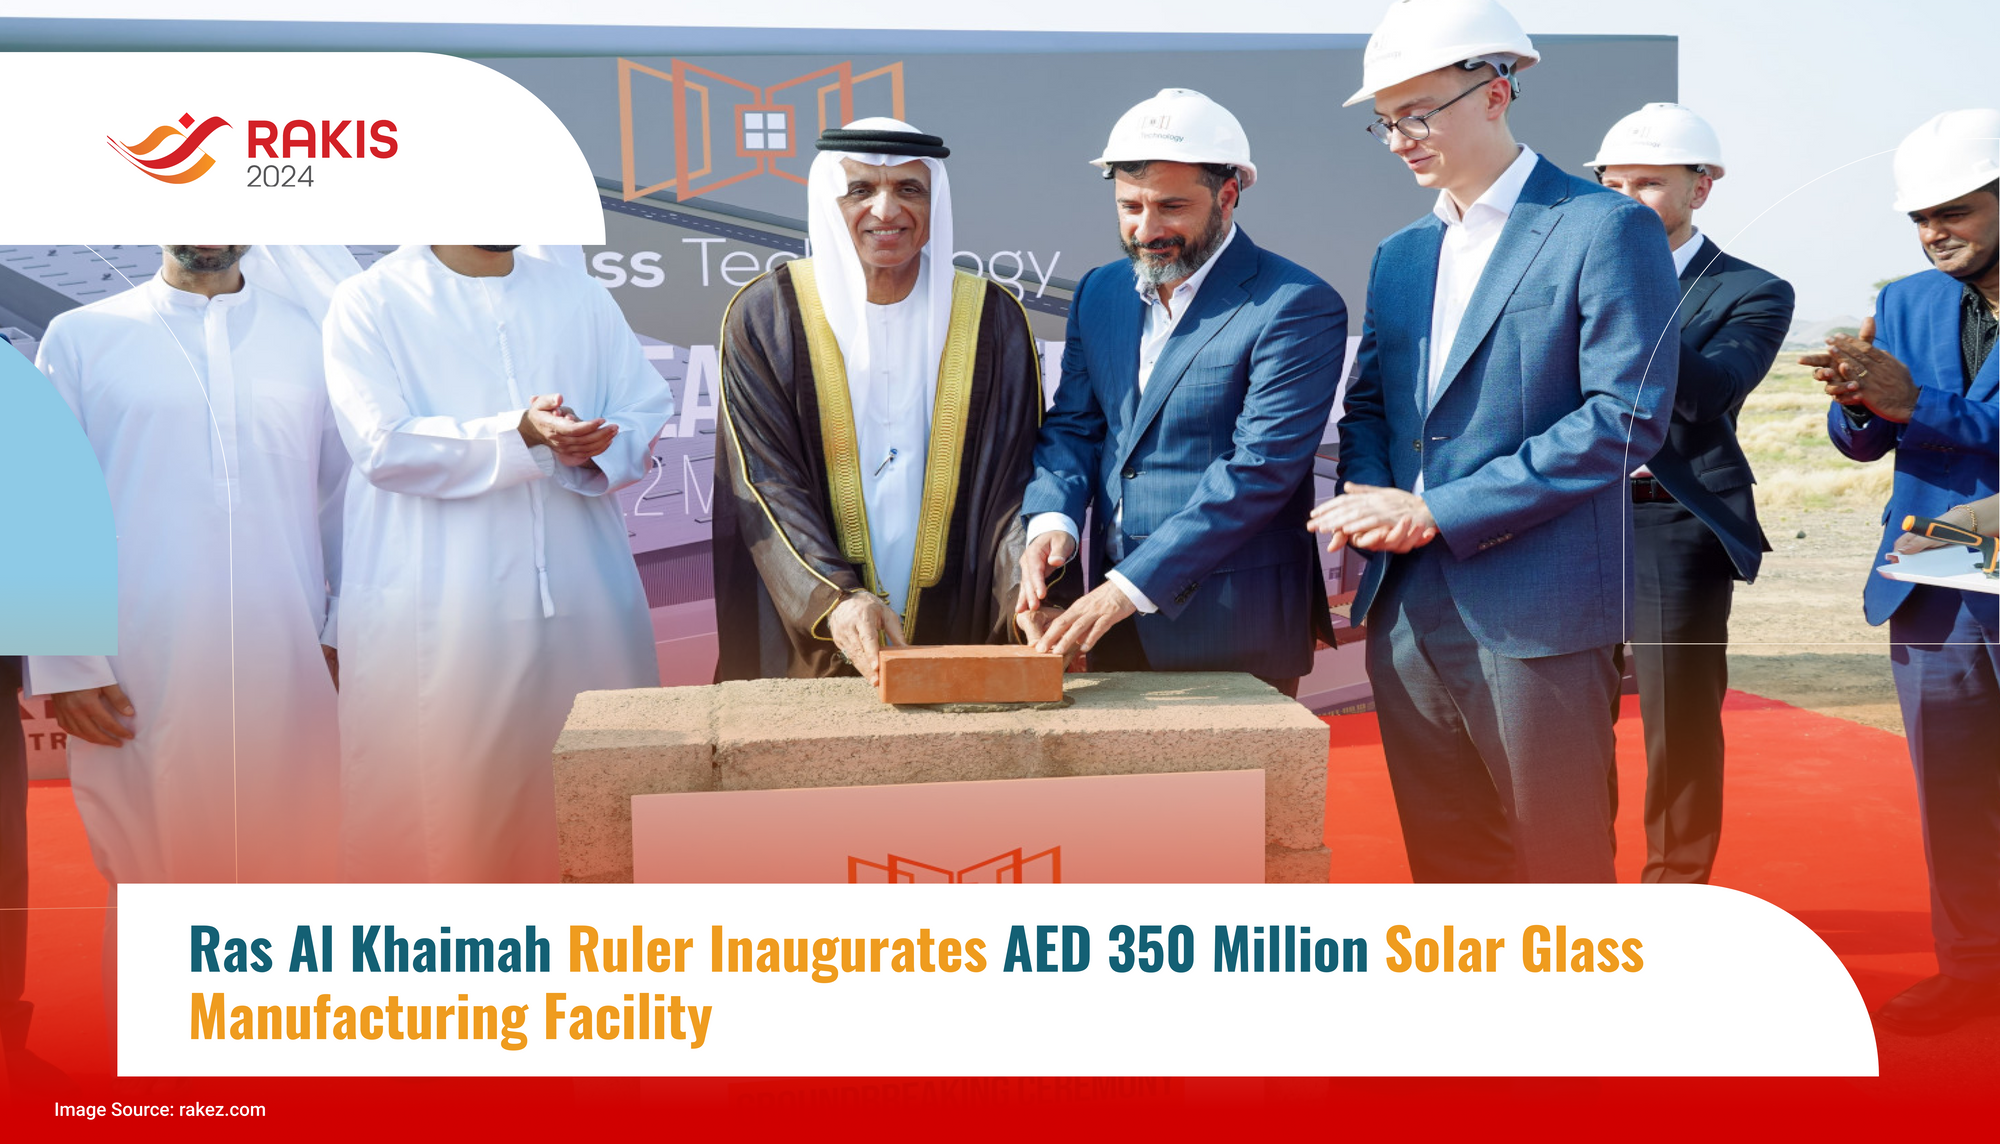 Ras Al Khaimah Ruler Inaugurates AED 350 Million Solar Glass Manufacturing Facility